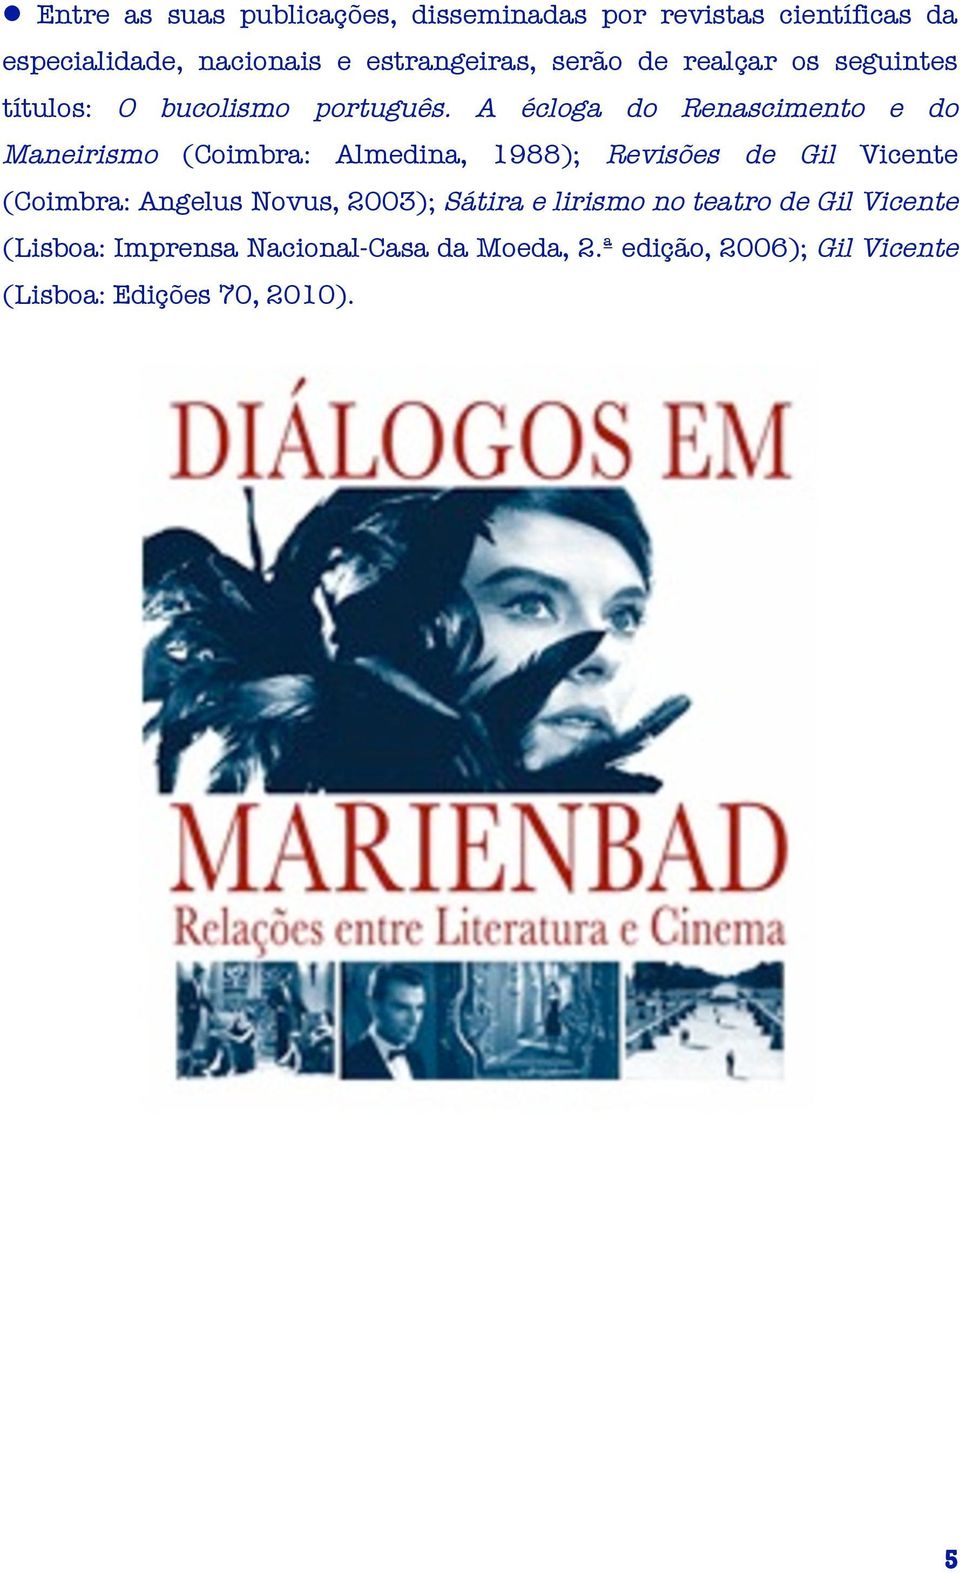 A écloga do Renascimento e do Maneirismo (Coimbra: Almedina, 1988); Revisões de Gil Vicente (Coimbra: Angelus